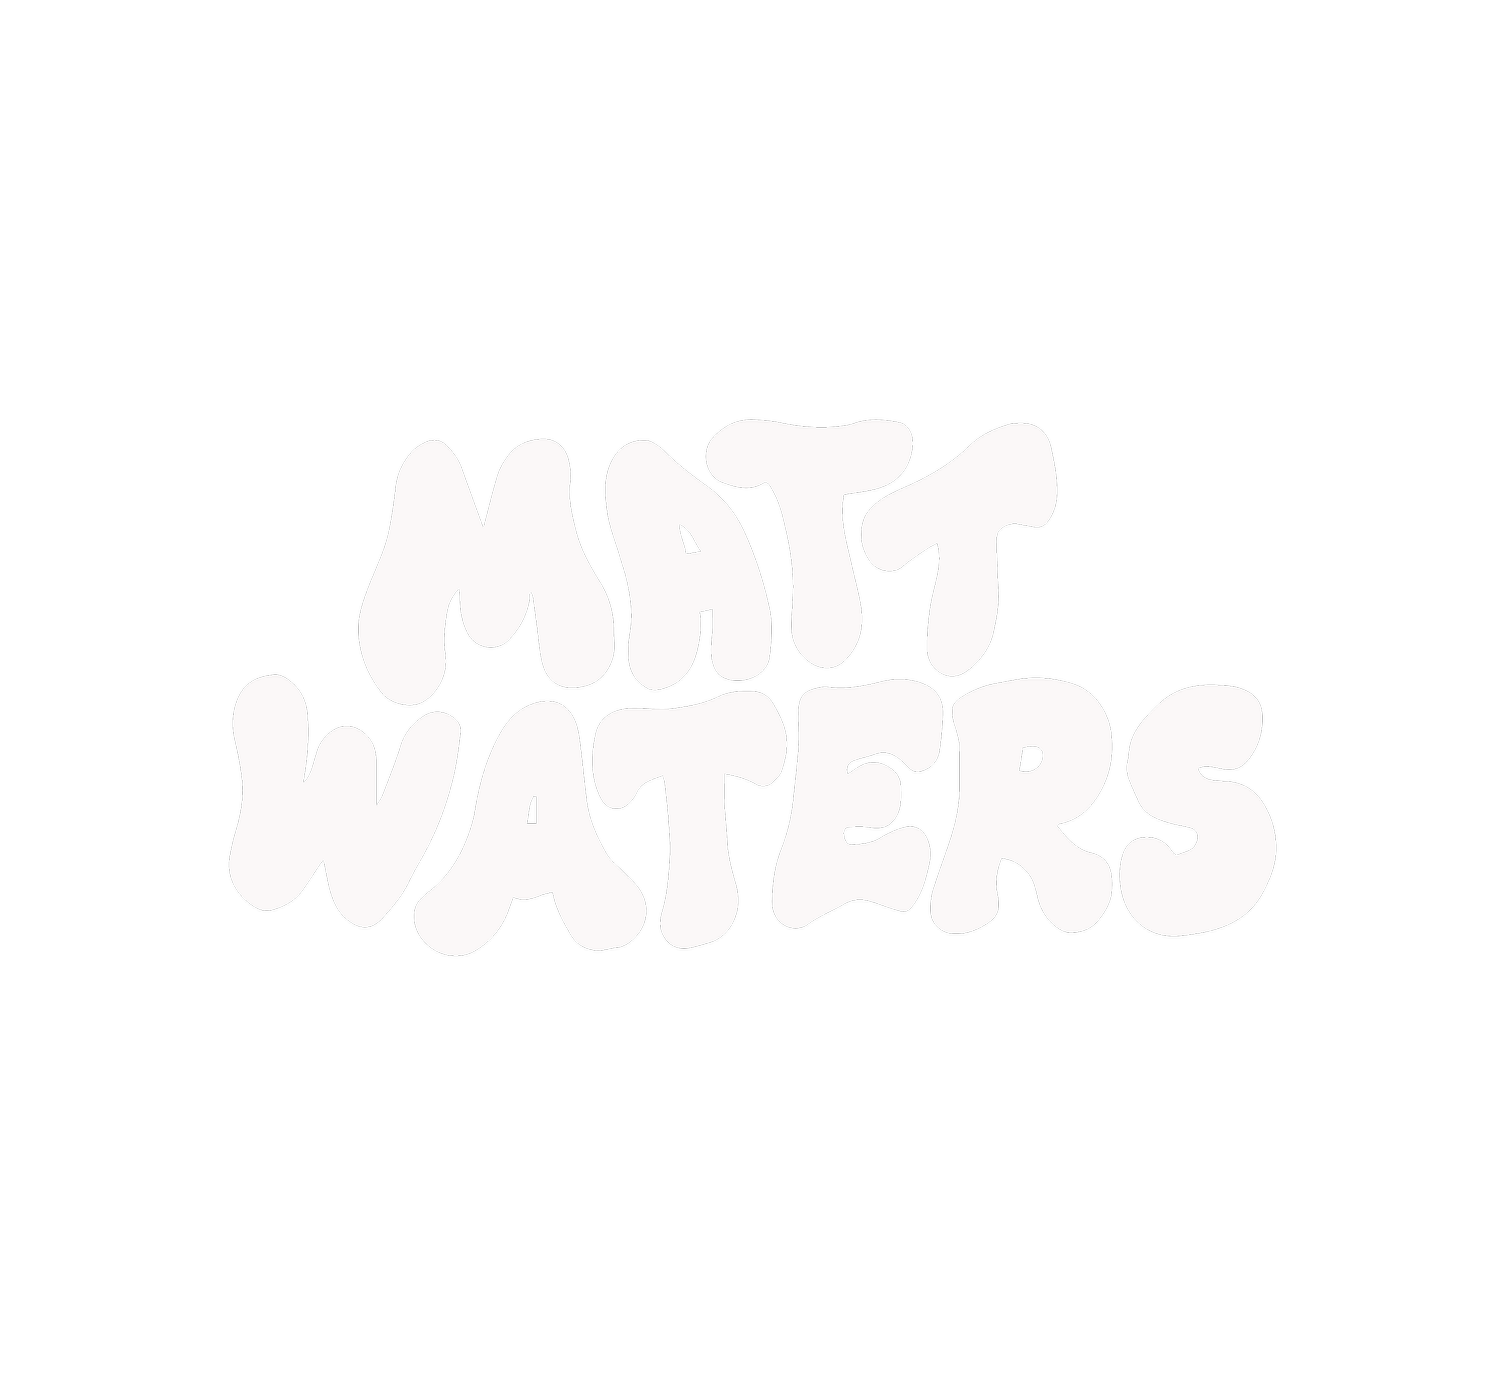 Matt Waters